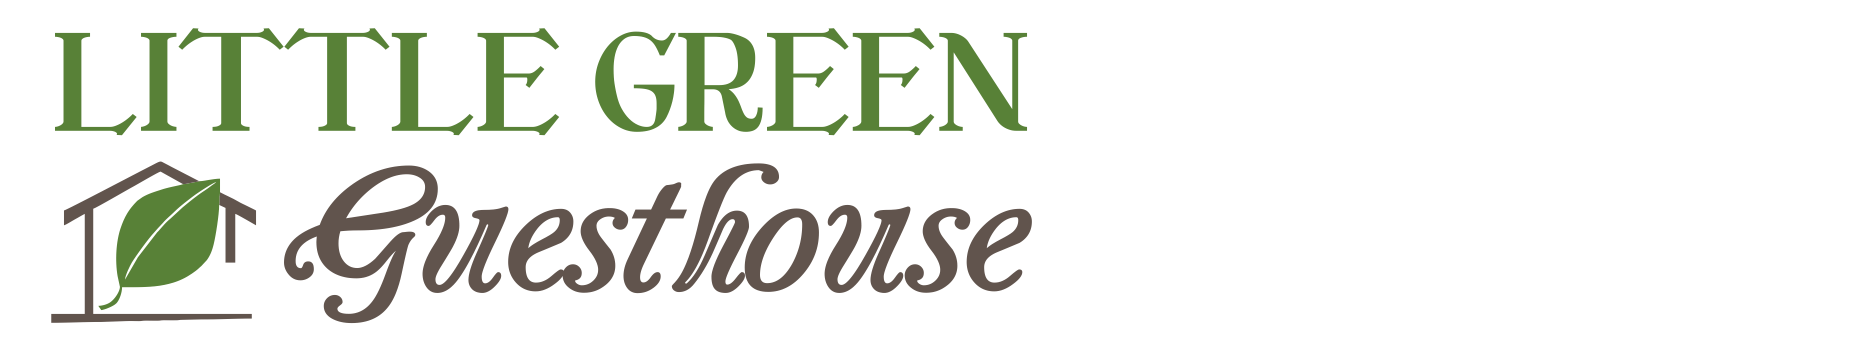 Little Green Guesthouse logo - website header